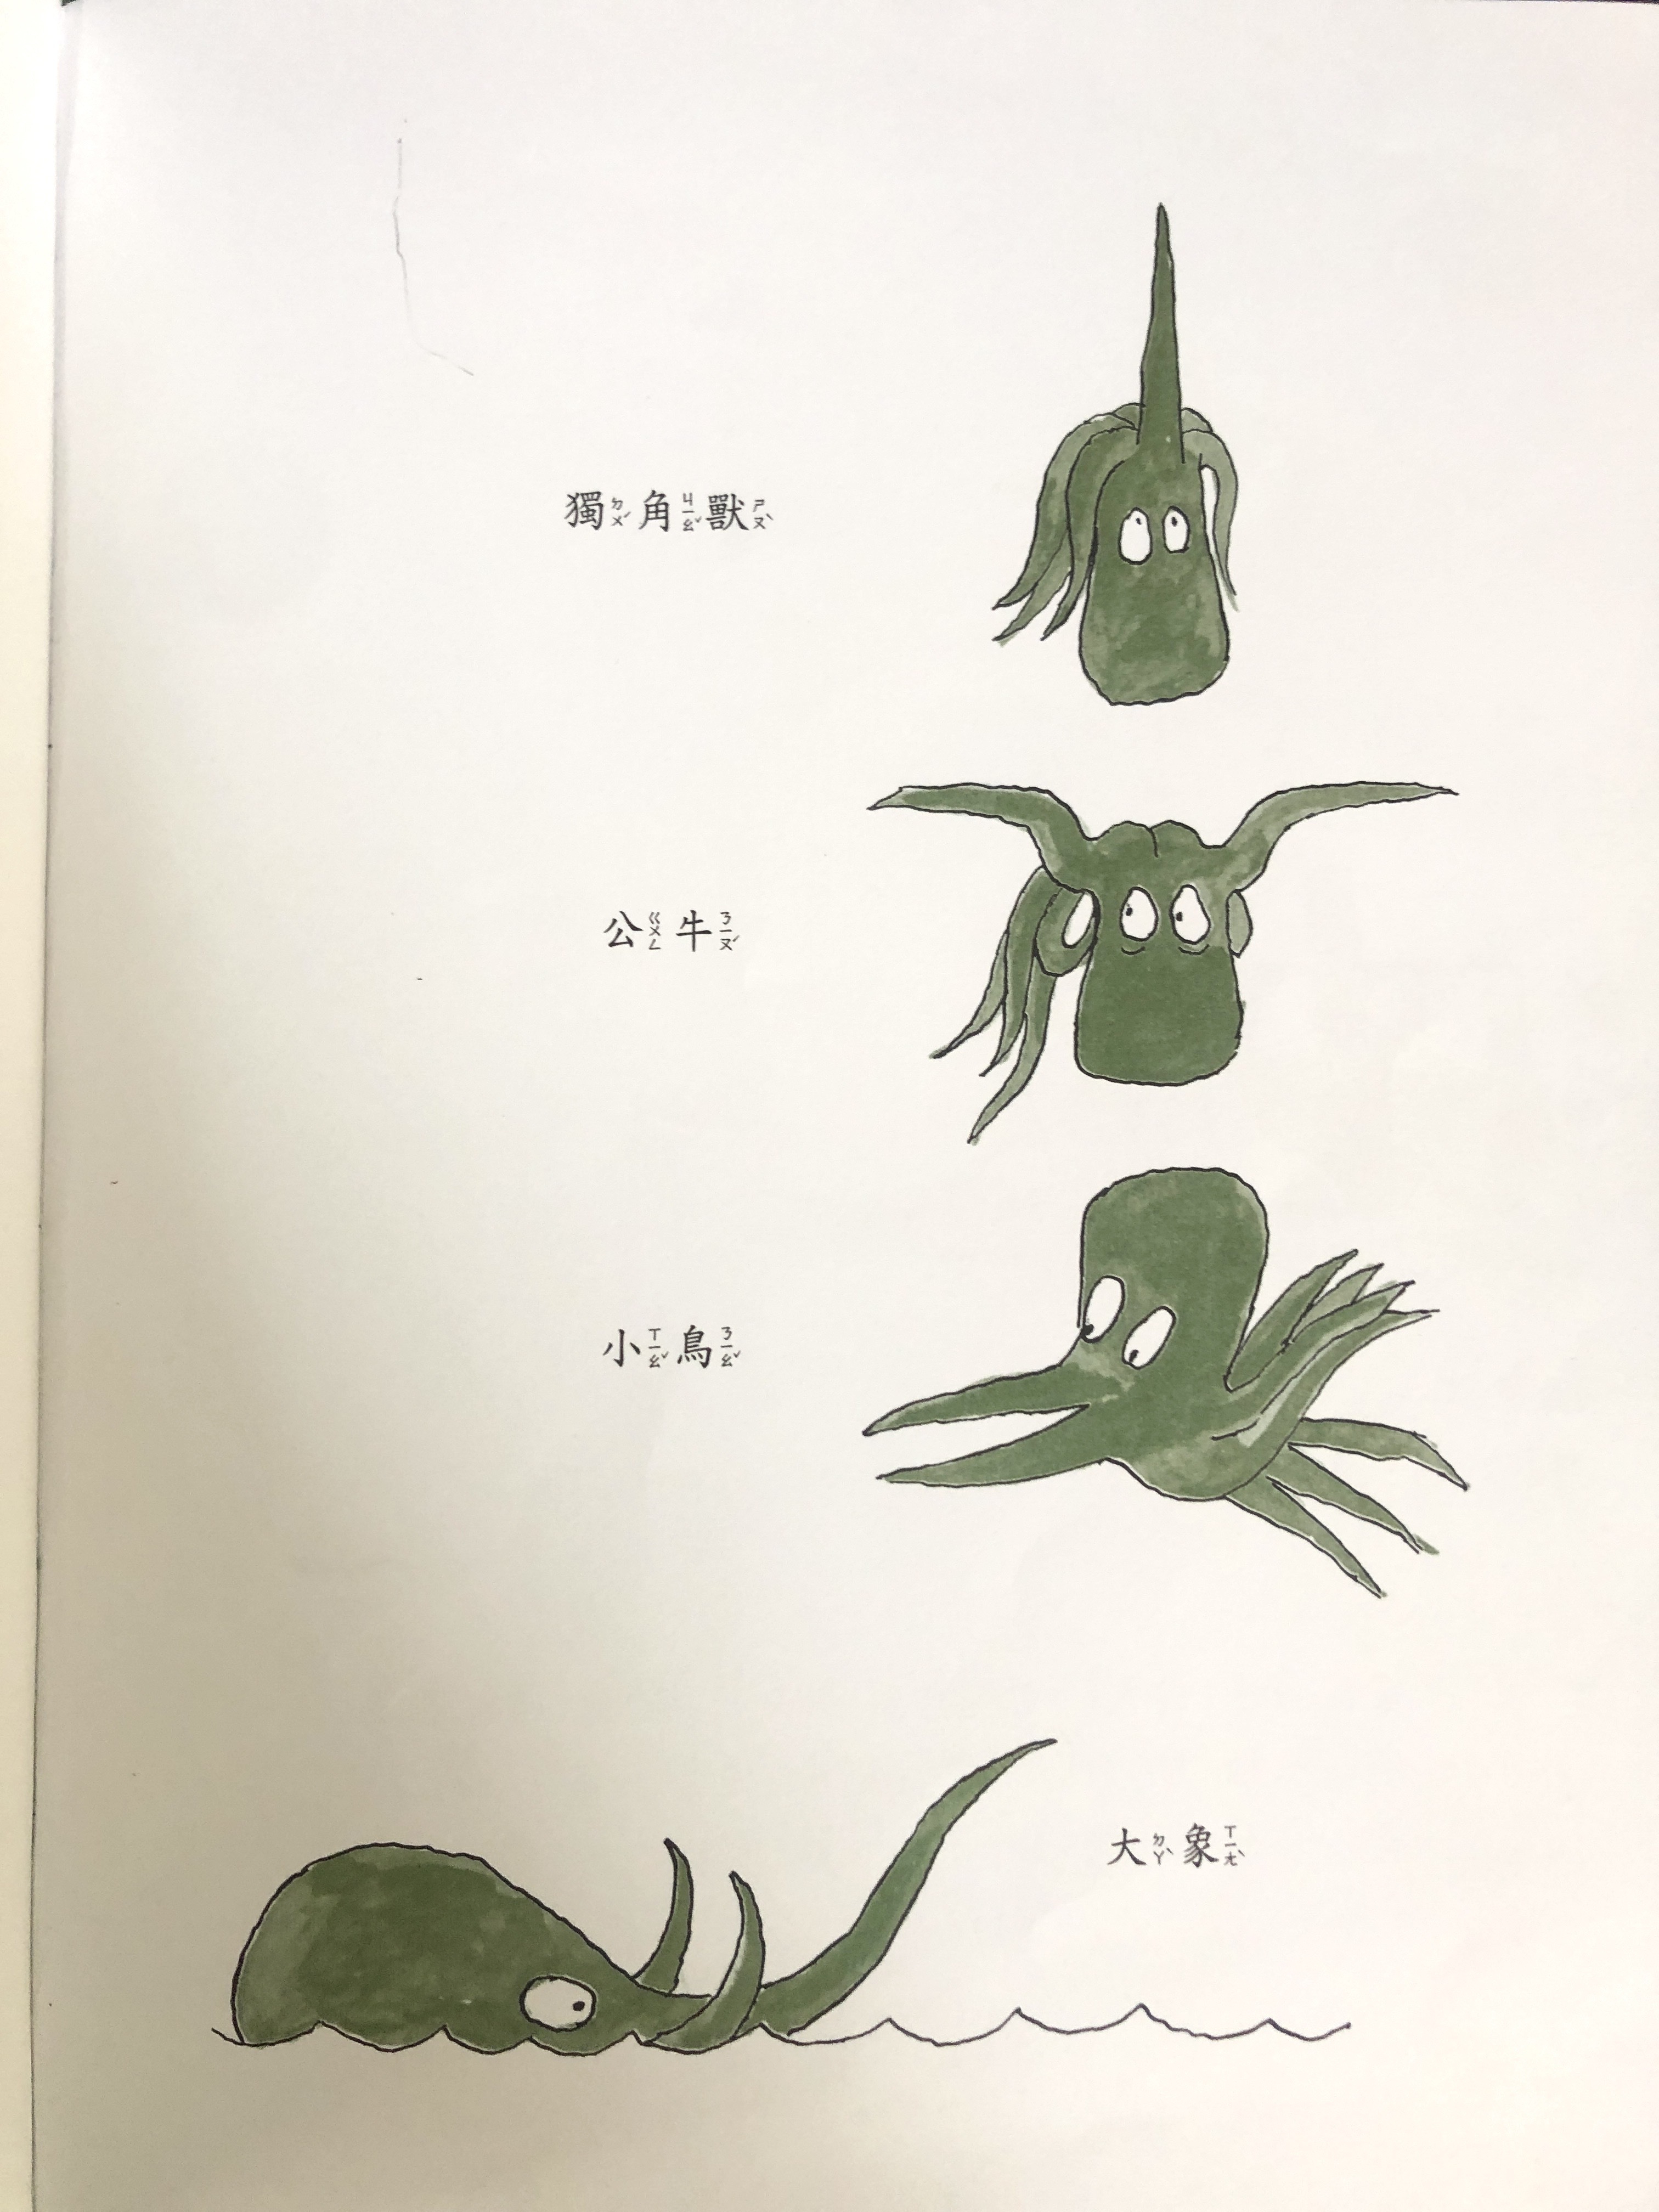 圖說：左圖出自《世界上最棒的蛇》內頁，右圖出自《大章魚艾米爾》內頁。波特夫人是一位老師，克里克多和波特夫人一起去上班時，也學會用自己的身體排出字母；如果曾經讀過《大章魚艾米爾》（Emile: The Helpful Octopus），應該會覺得這一幕似曾相識，艾米爾也很熱衷於變身成不同東西。